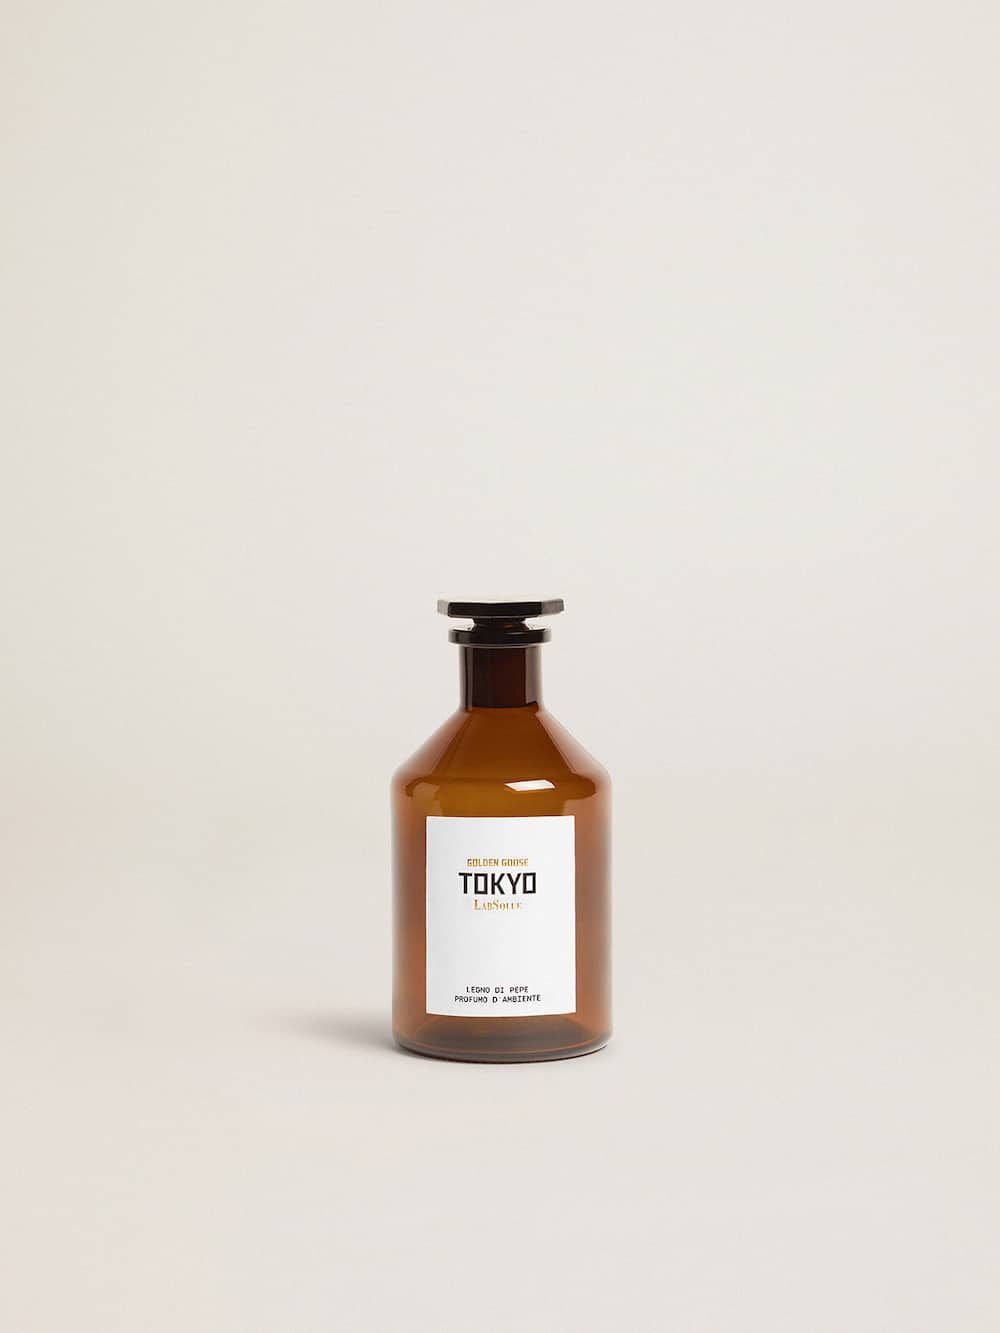 Golden Goose - Tokyo Essence bois de poivre parfum d’ambiance 500 ml in 